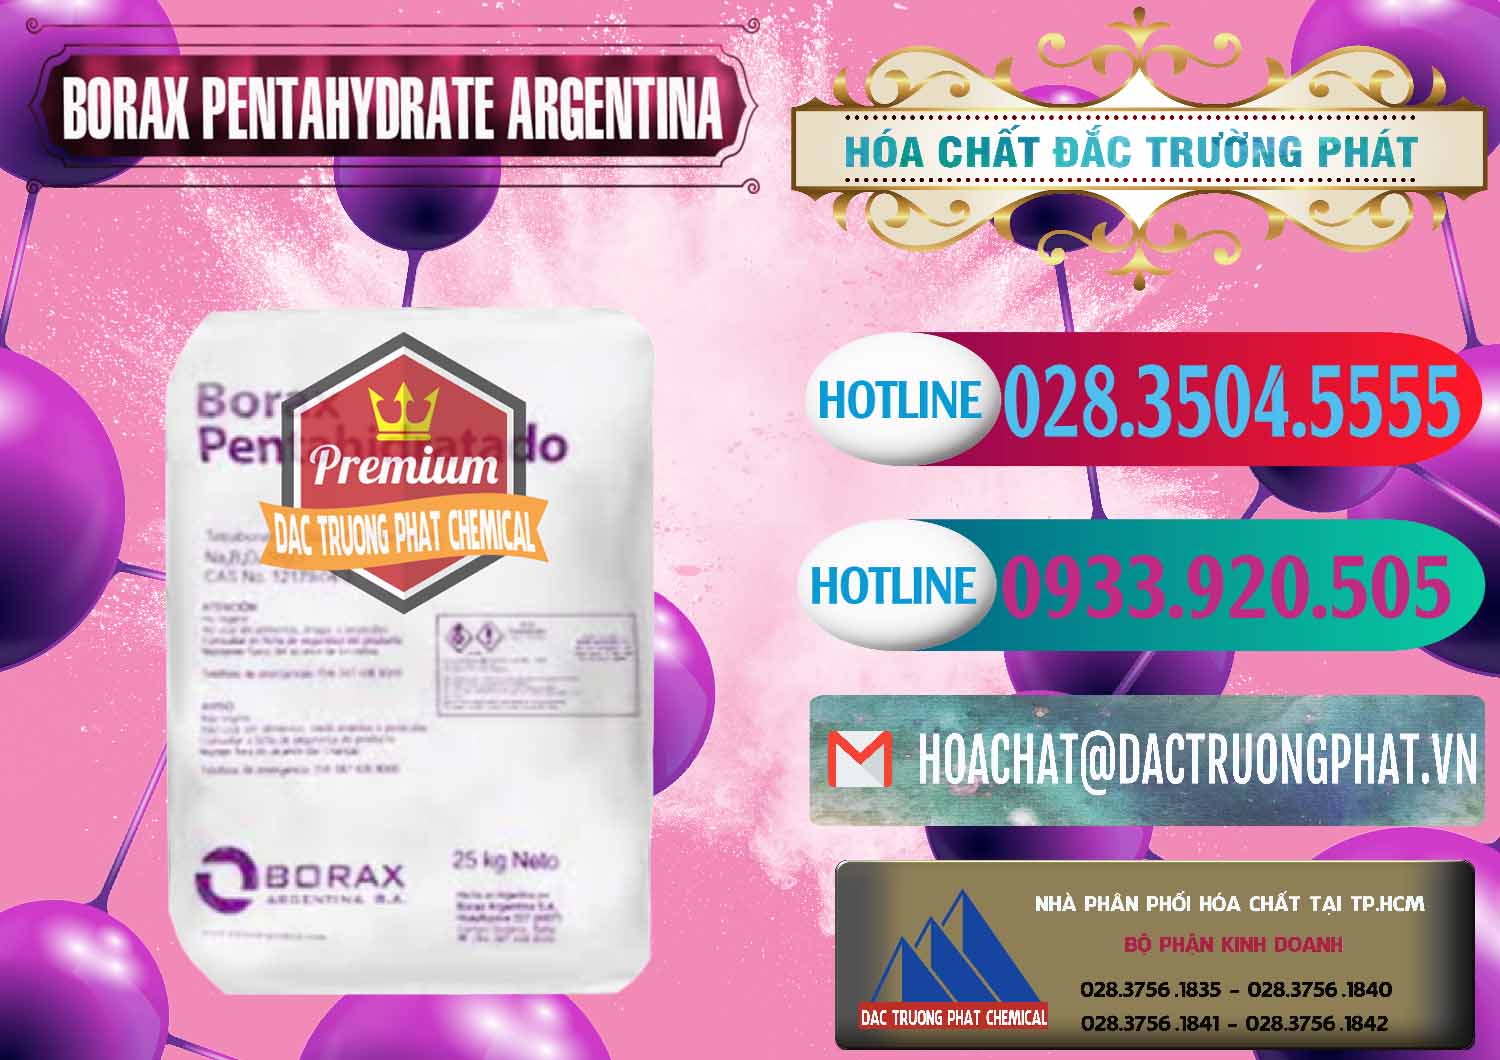 Chuyên phân phối và bán Borax Pentahydrate Argentina - 0447 - Chuyên phân phối _ kinh doanh hóa chất tại TP.HCM - truongphat.vn